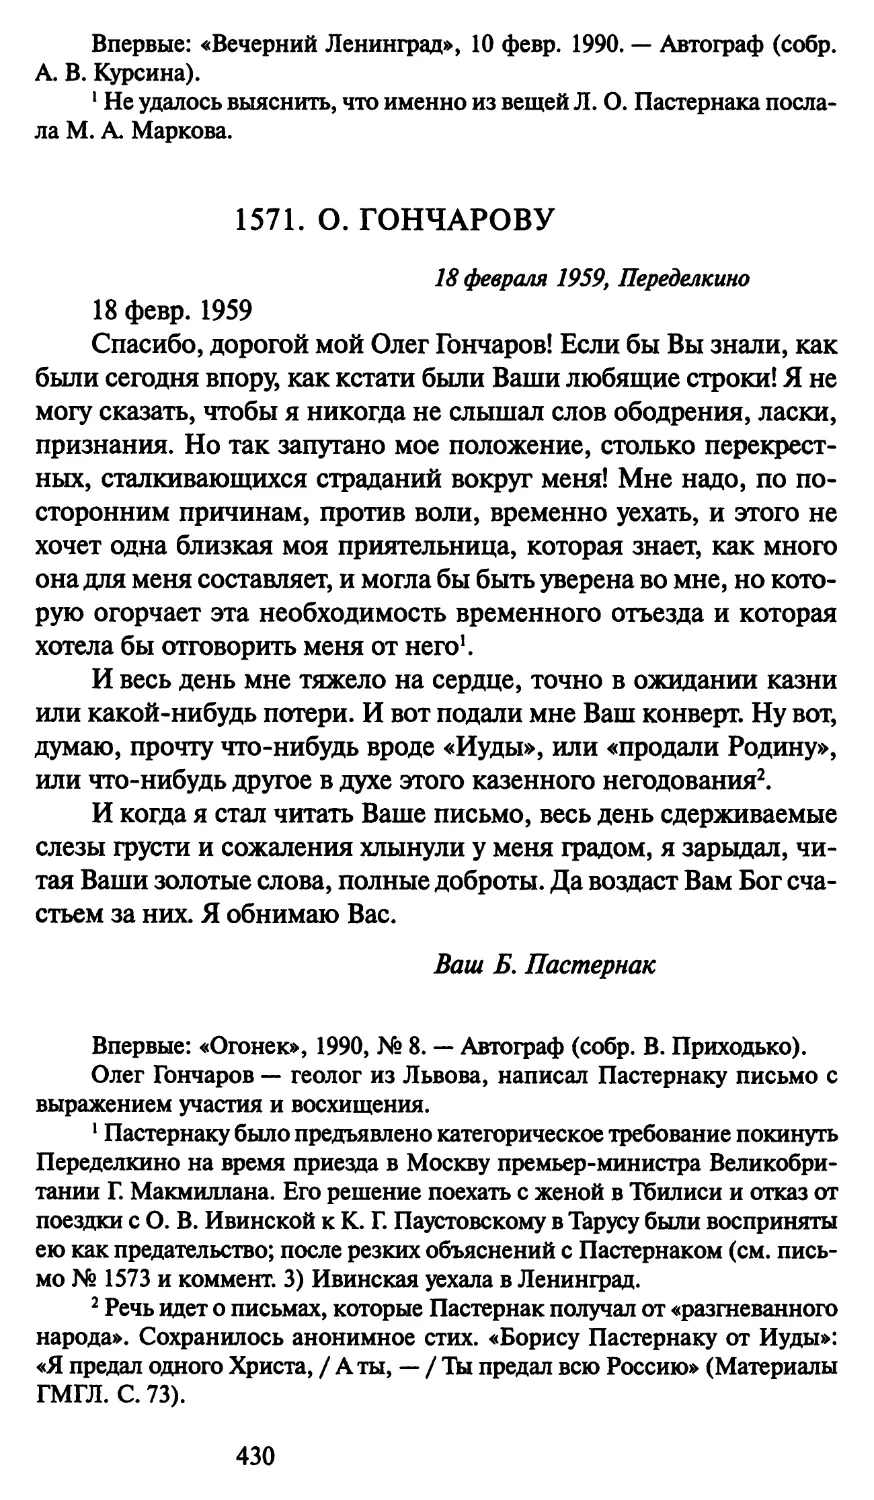 1571. О. Гончарову 18 февраля 1959